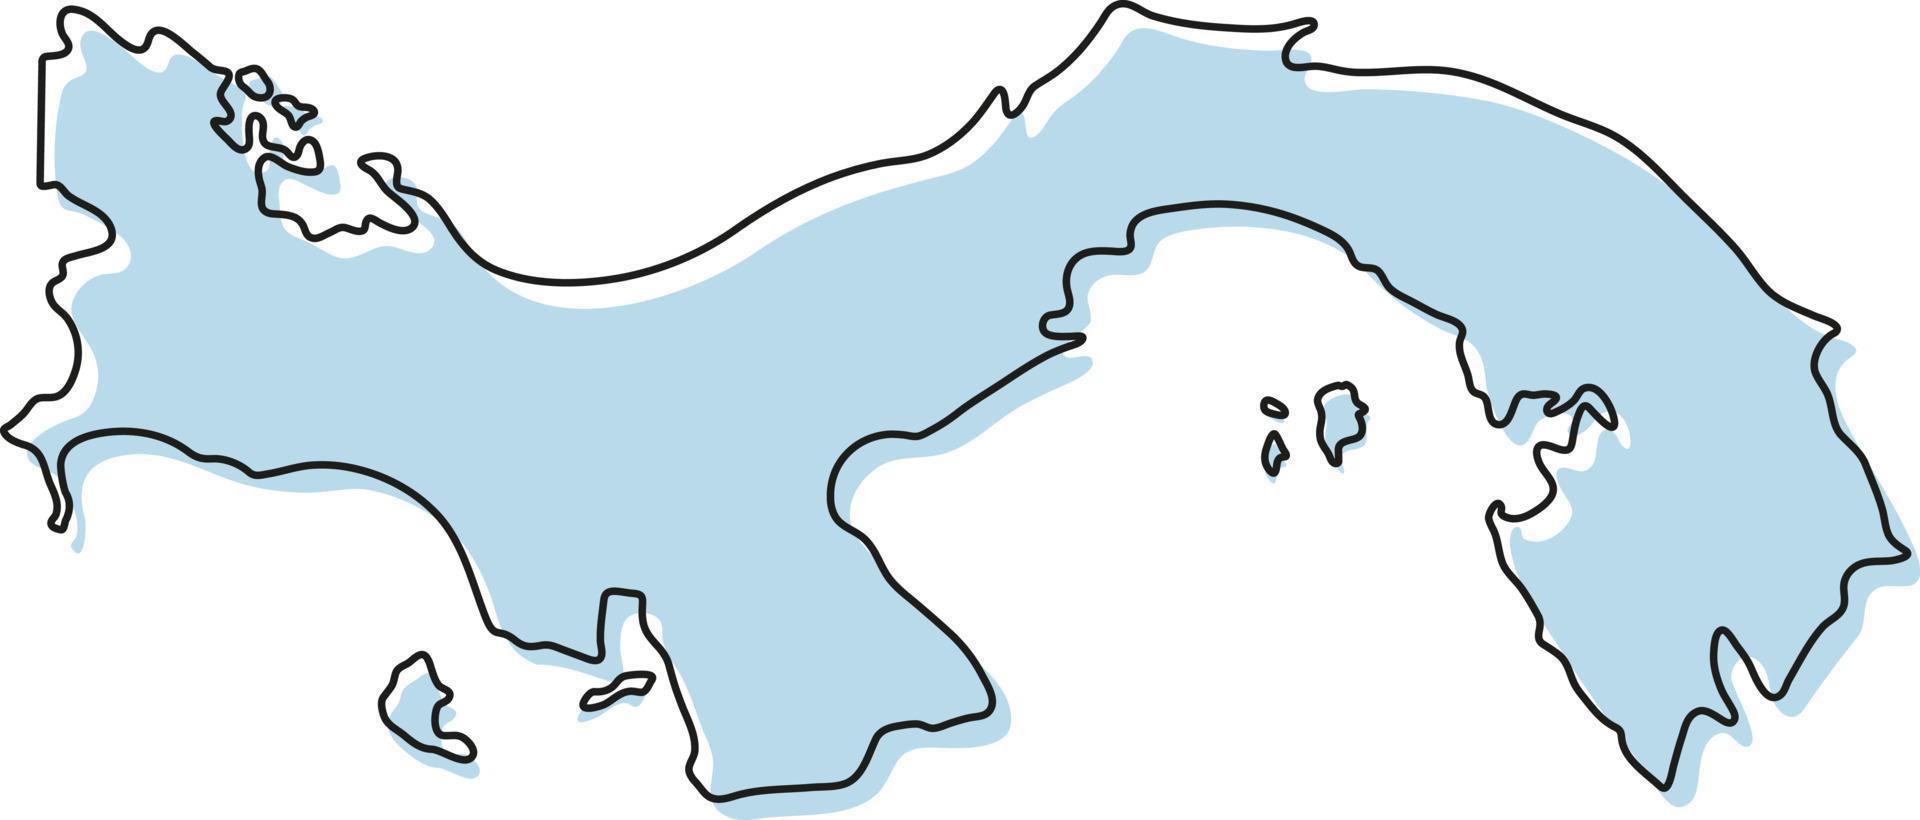 gestileerde eenvoudige overzichtskaart van het pictogram van Panama. blauwe schetskaart van panama vectorillustratie vector